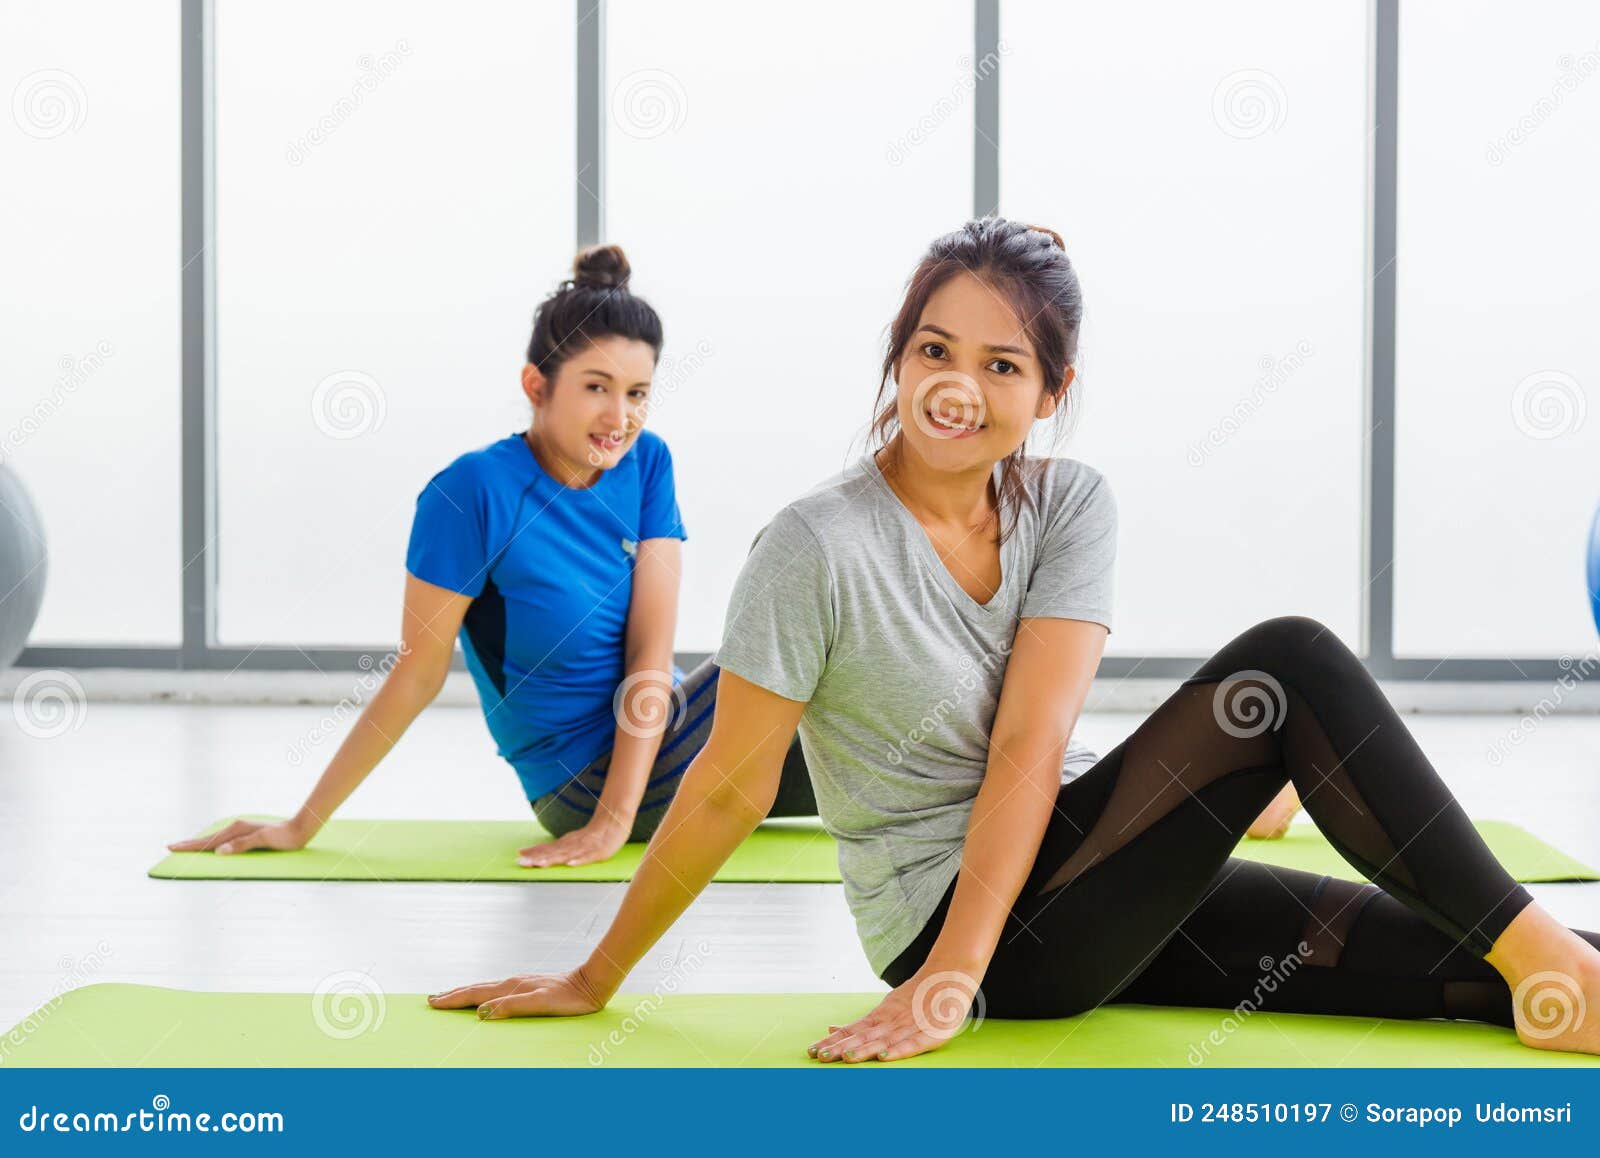 Adultos Y Jóvenes En Ropa Haciendo Ejercicios De Yoga Aerobic Con Sentarse En La Bola De Fitness de archivo - Imagen medio, deportivo: 248510197